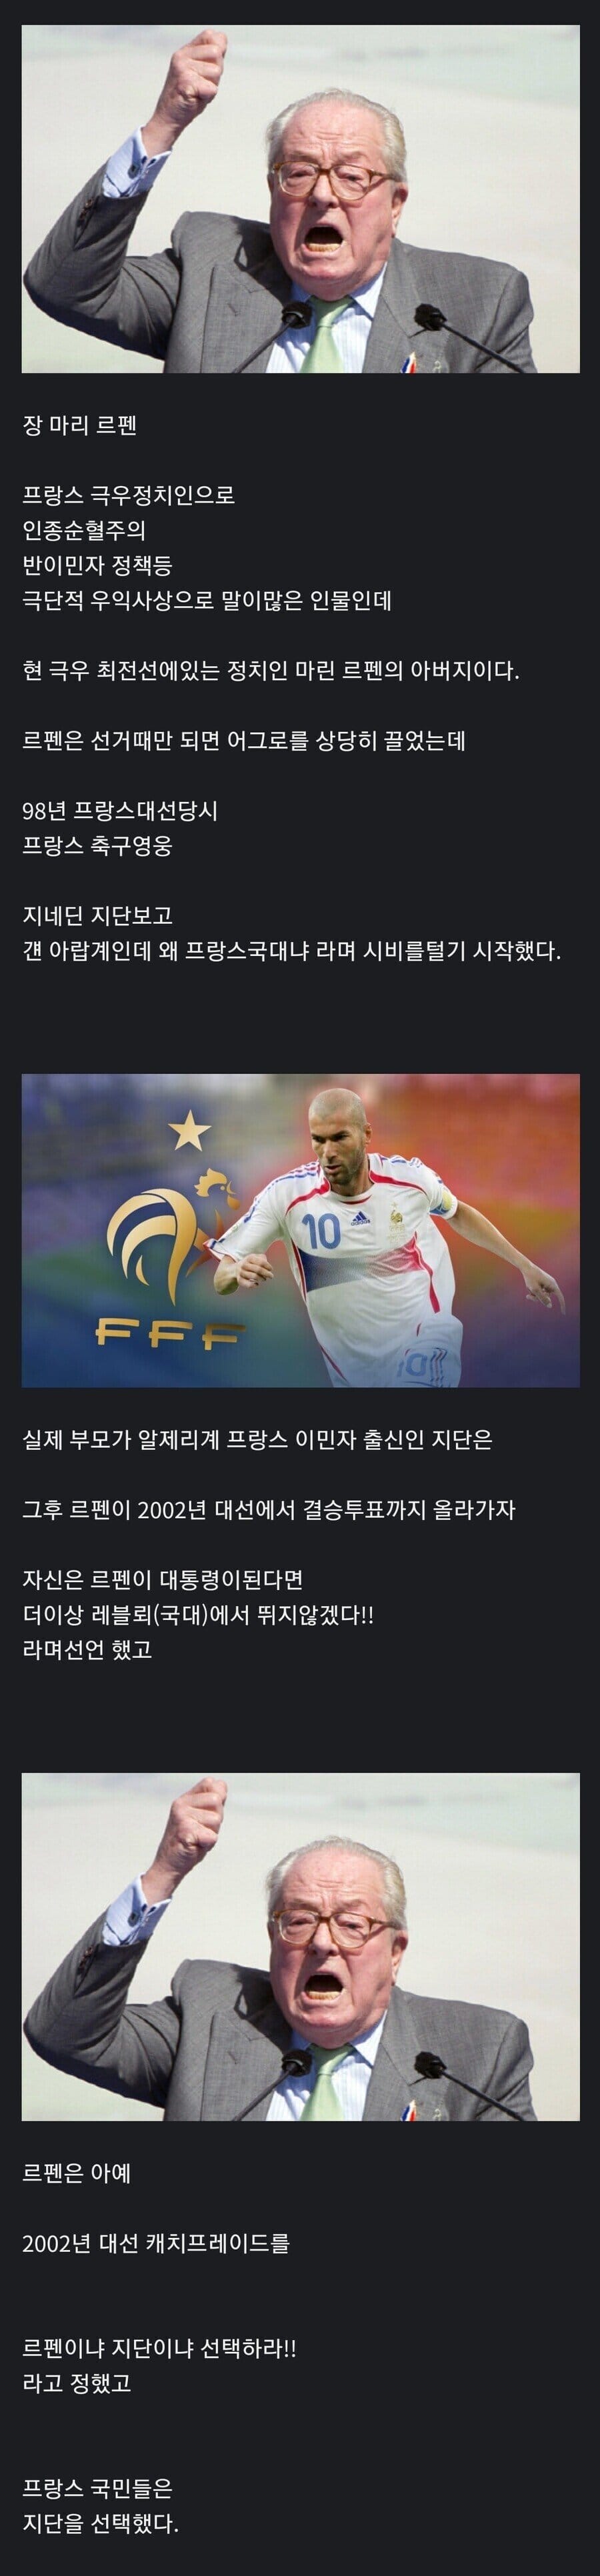 축구선수와 싸운 정치인...jpg